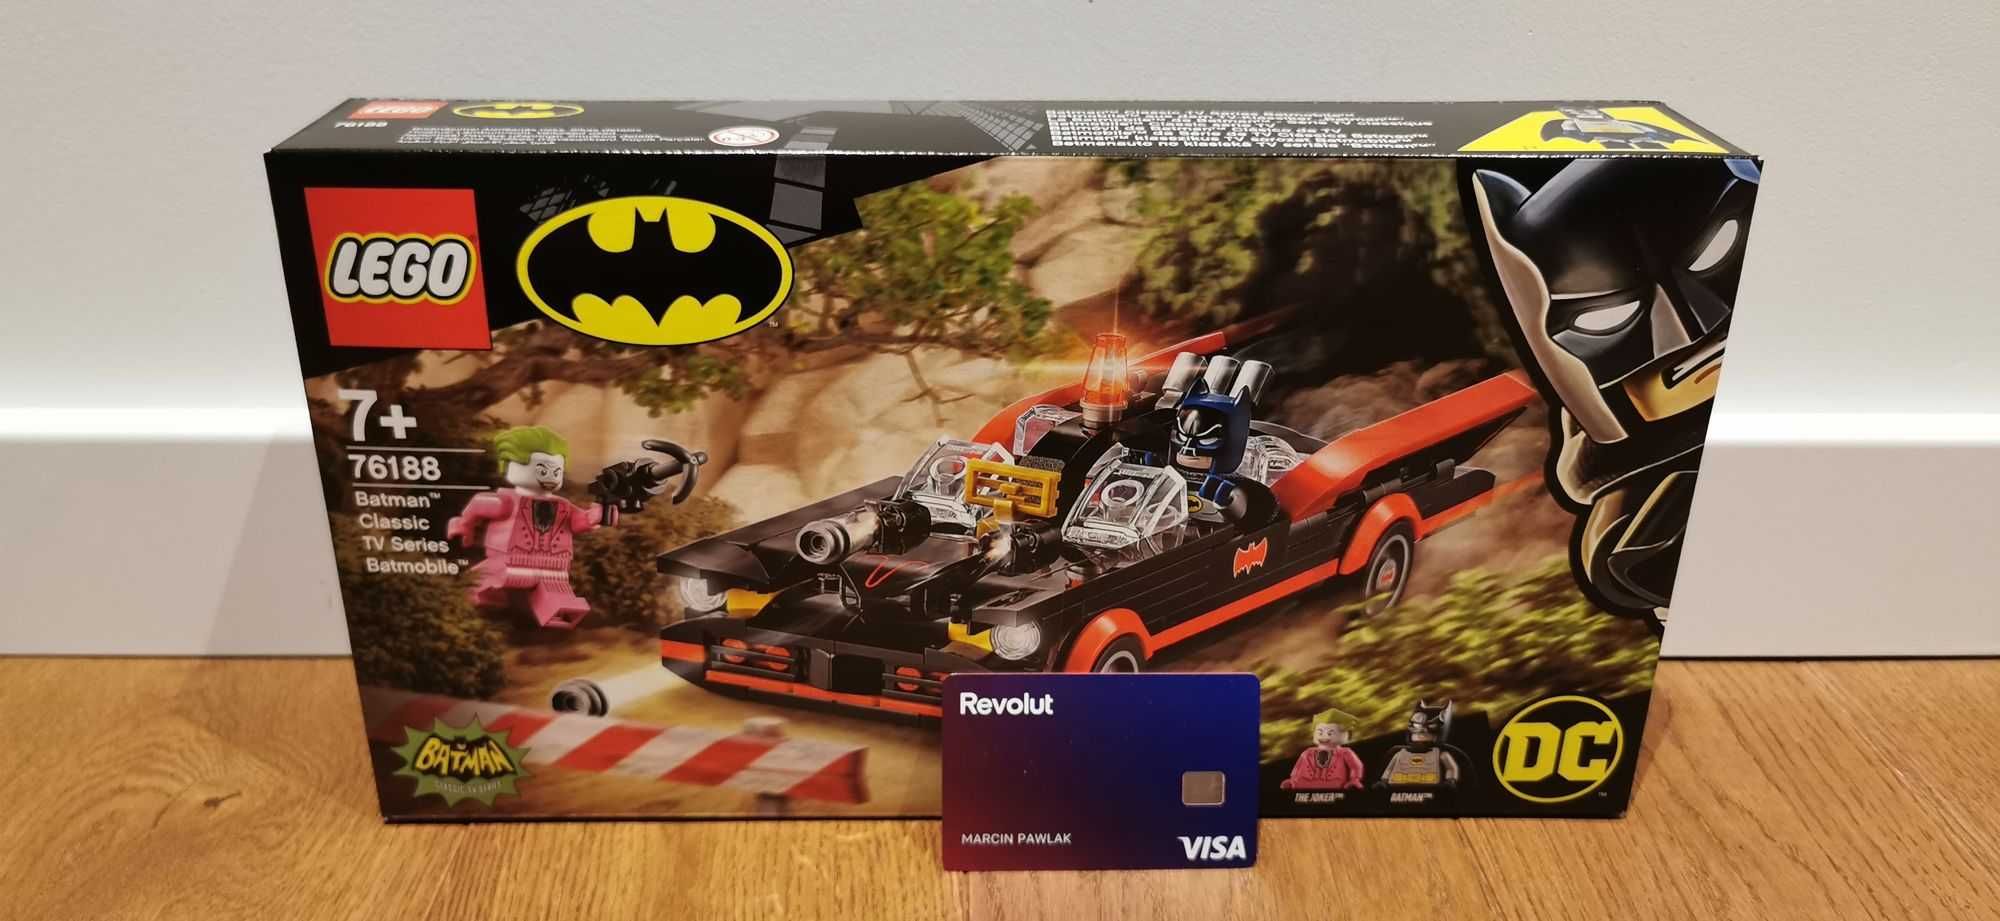 LEGO 76188 - Klasyczny serial telewizyjny Batman Batmobil